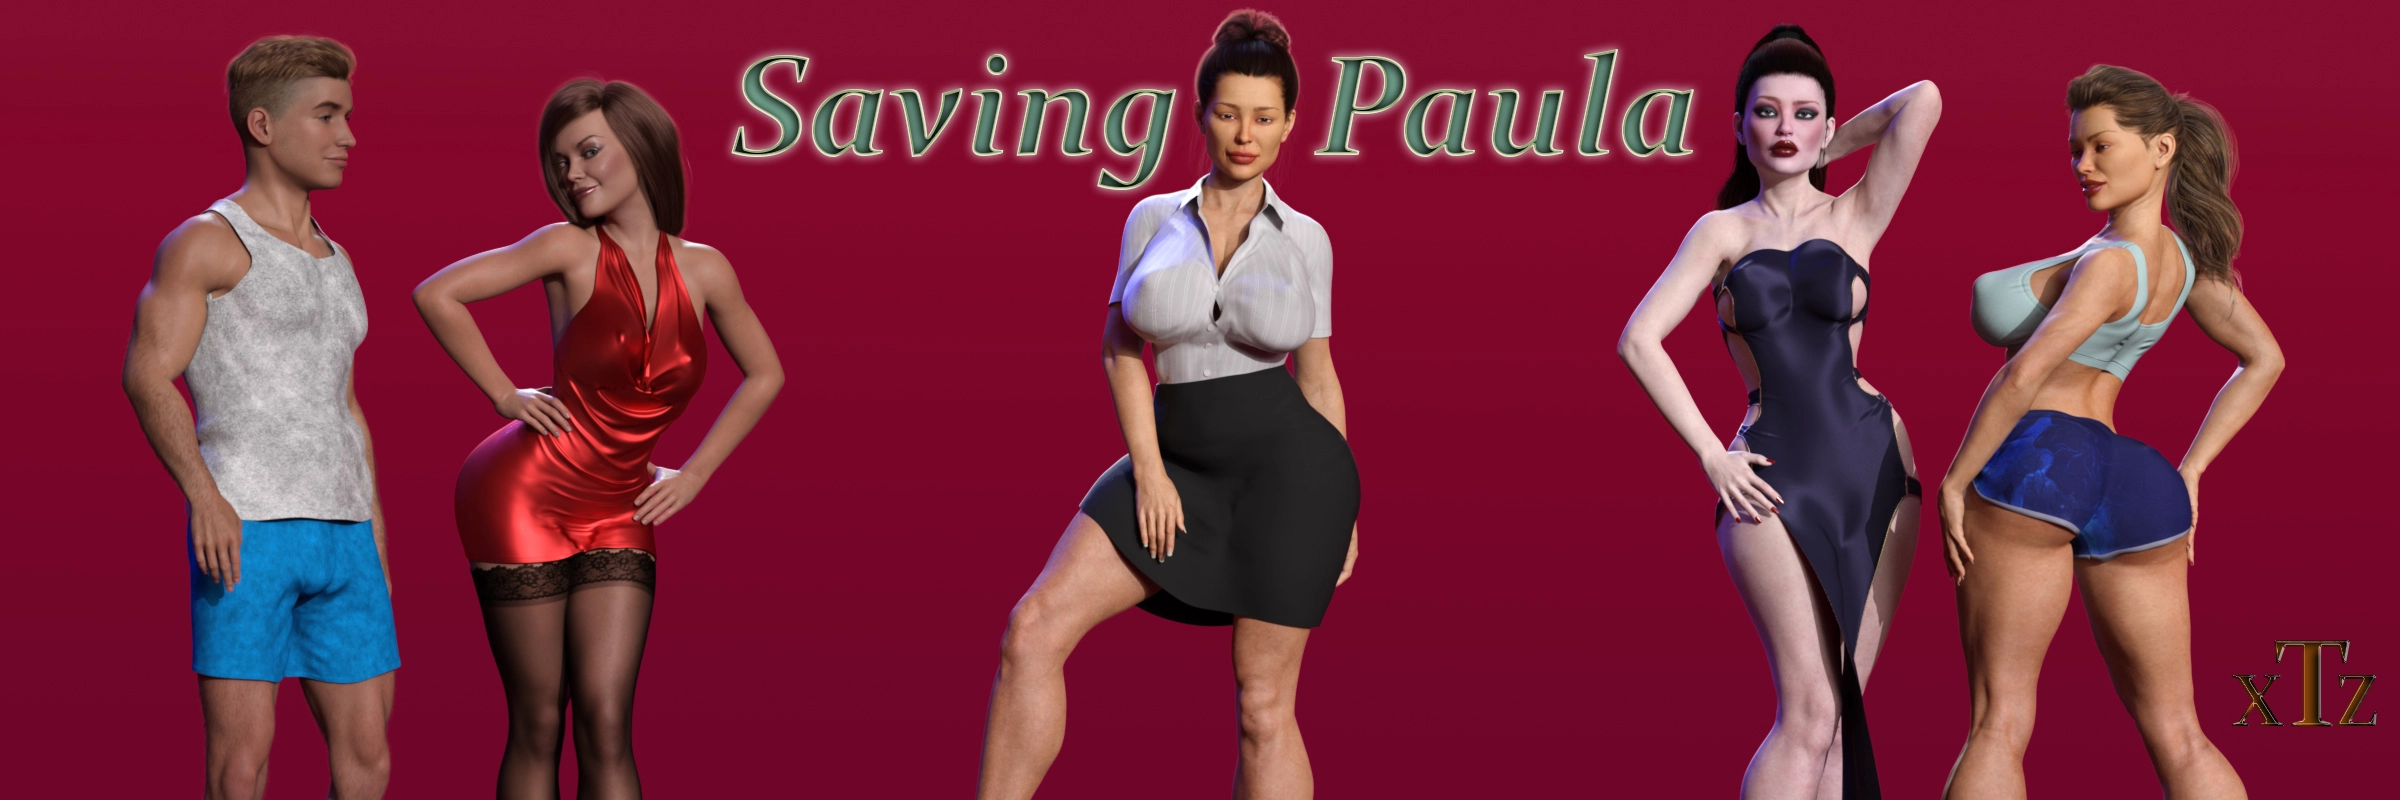 Saving Paula [v0.0.1 - Alpha] main image